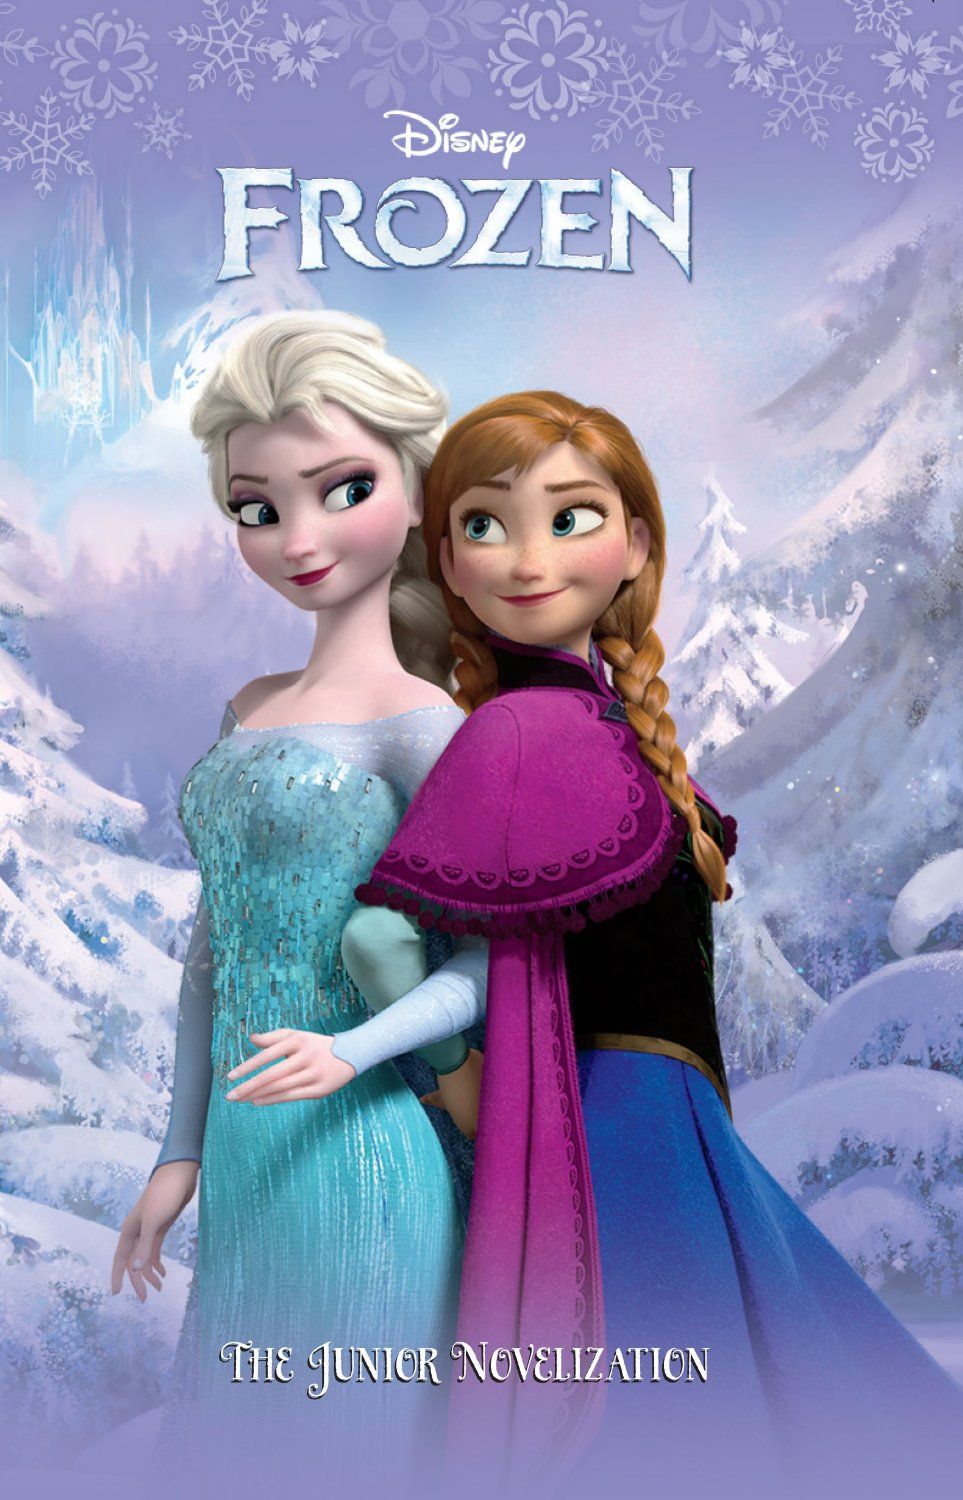 Free download Princess Anna image Anna and Elsa wallpaper photo